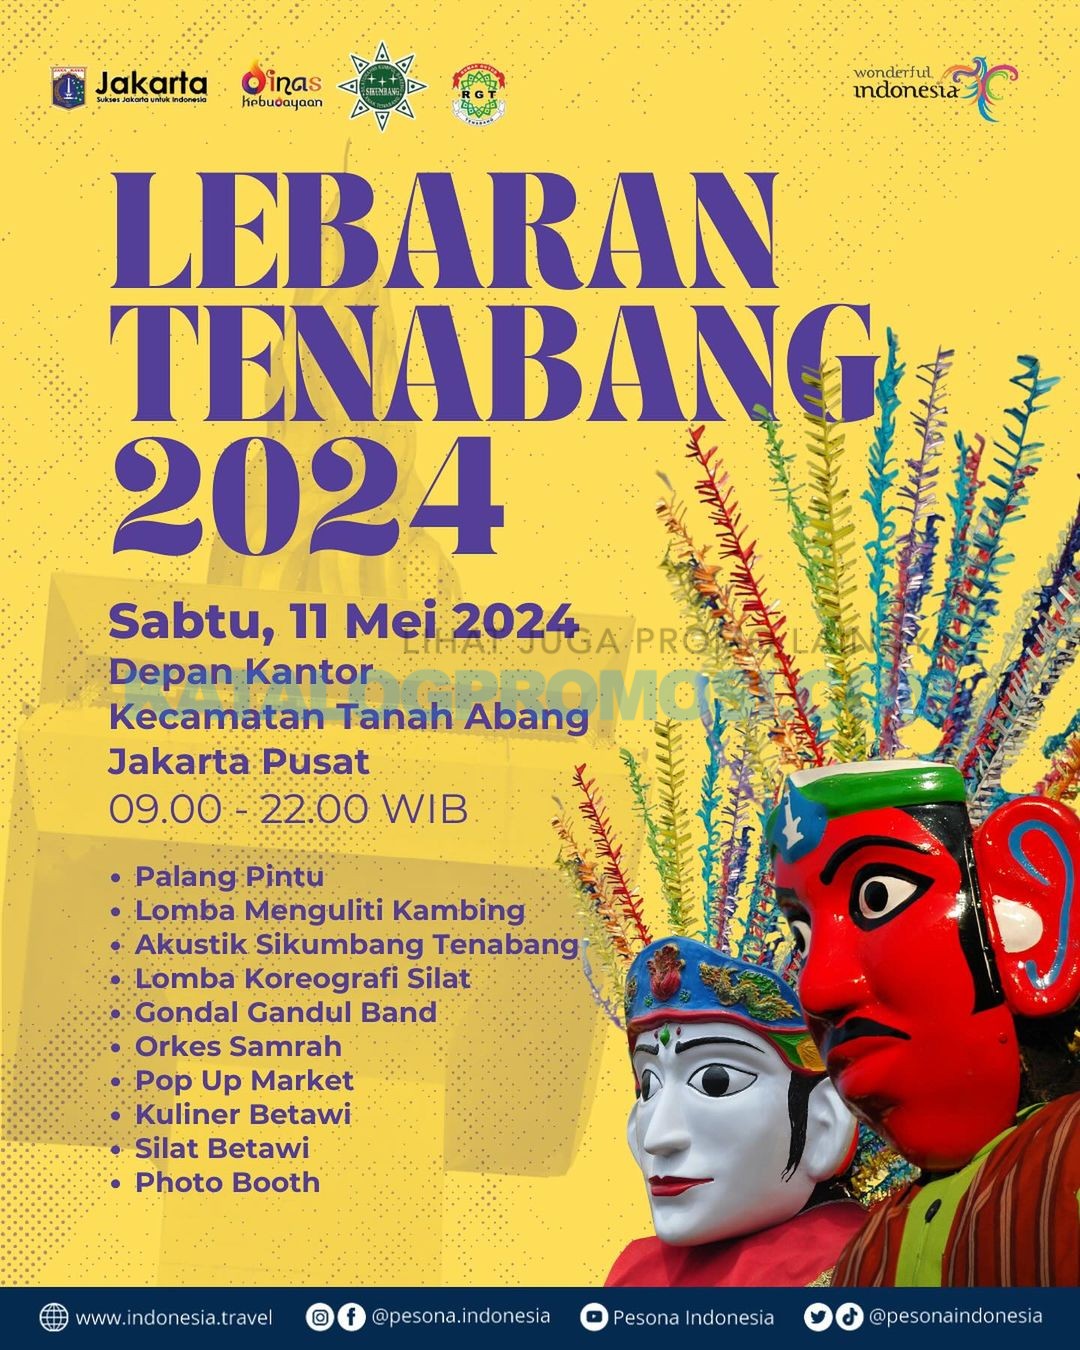 Yuk datang dan hadiri acara Lebaran Tenabang 2024 tanggal 11 Mei 2024  di Depan Kantor Kecamatan Tanah Abang, Jakarta Pusat, DKI Jakarta